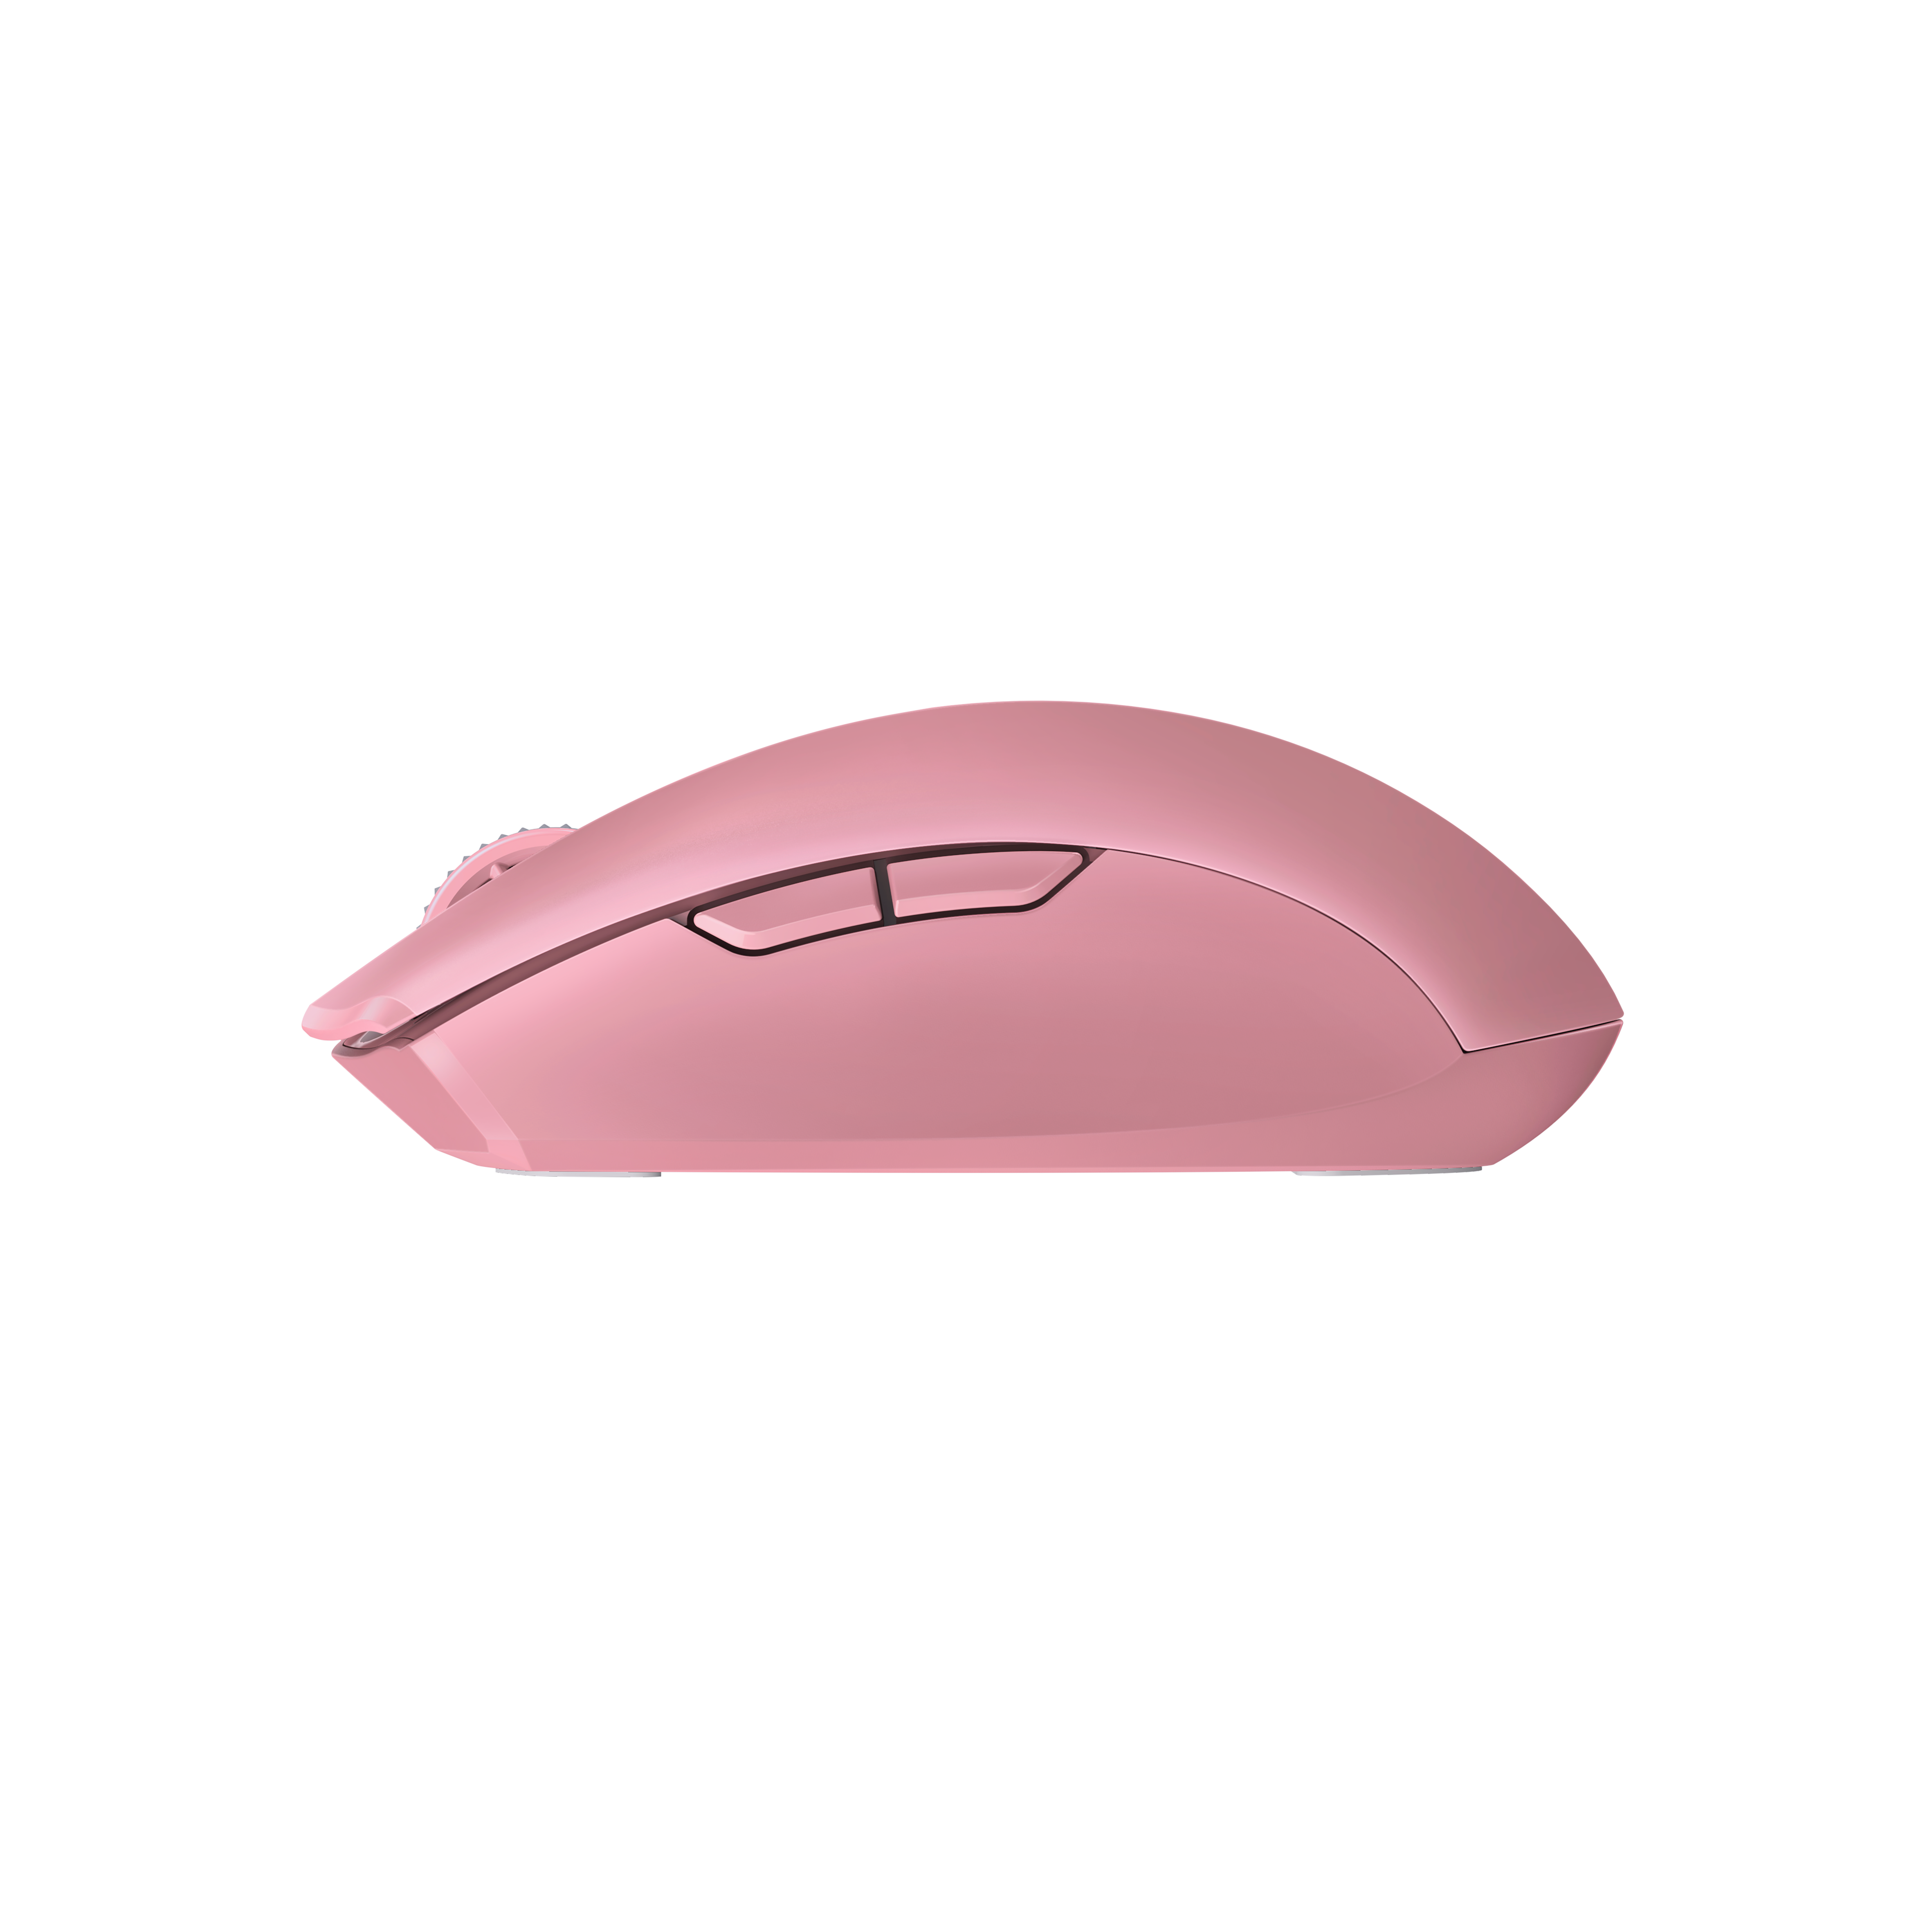 Razer Orochi V2 Hyperspeed 5G Wireless Gaming Mouse —